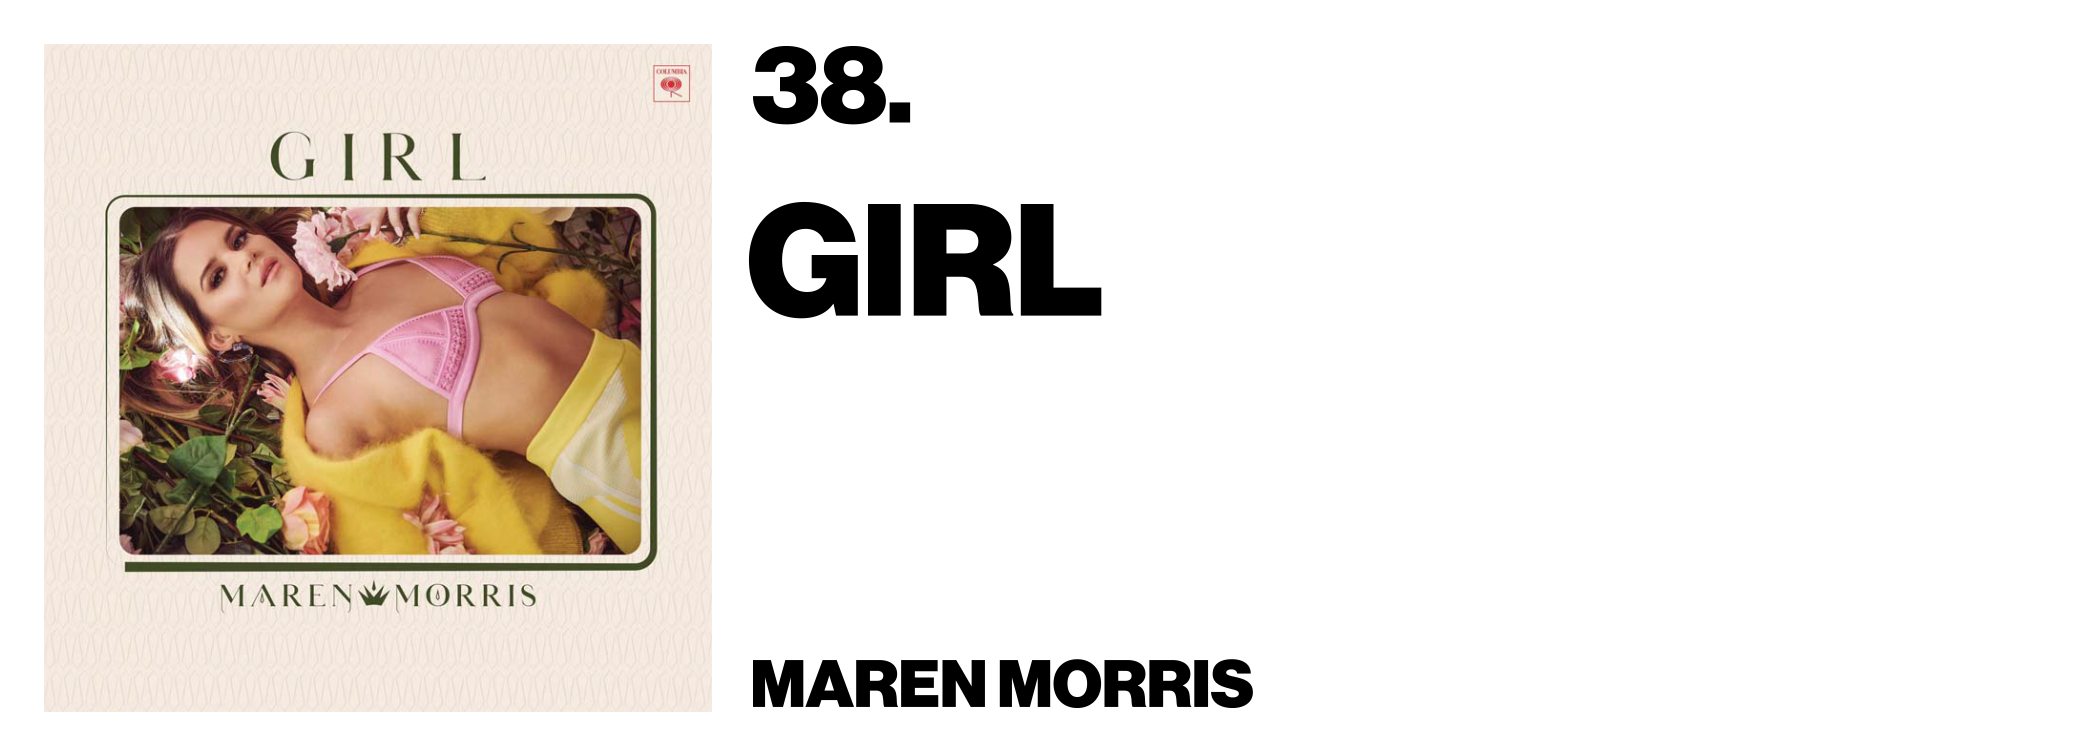 1576011979920-38-Maren-Morris-Girl